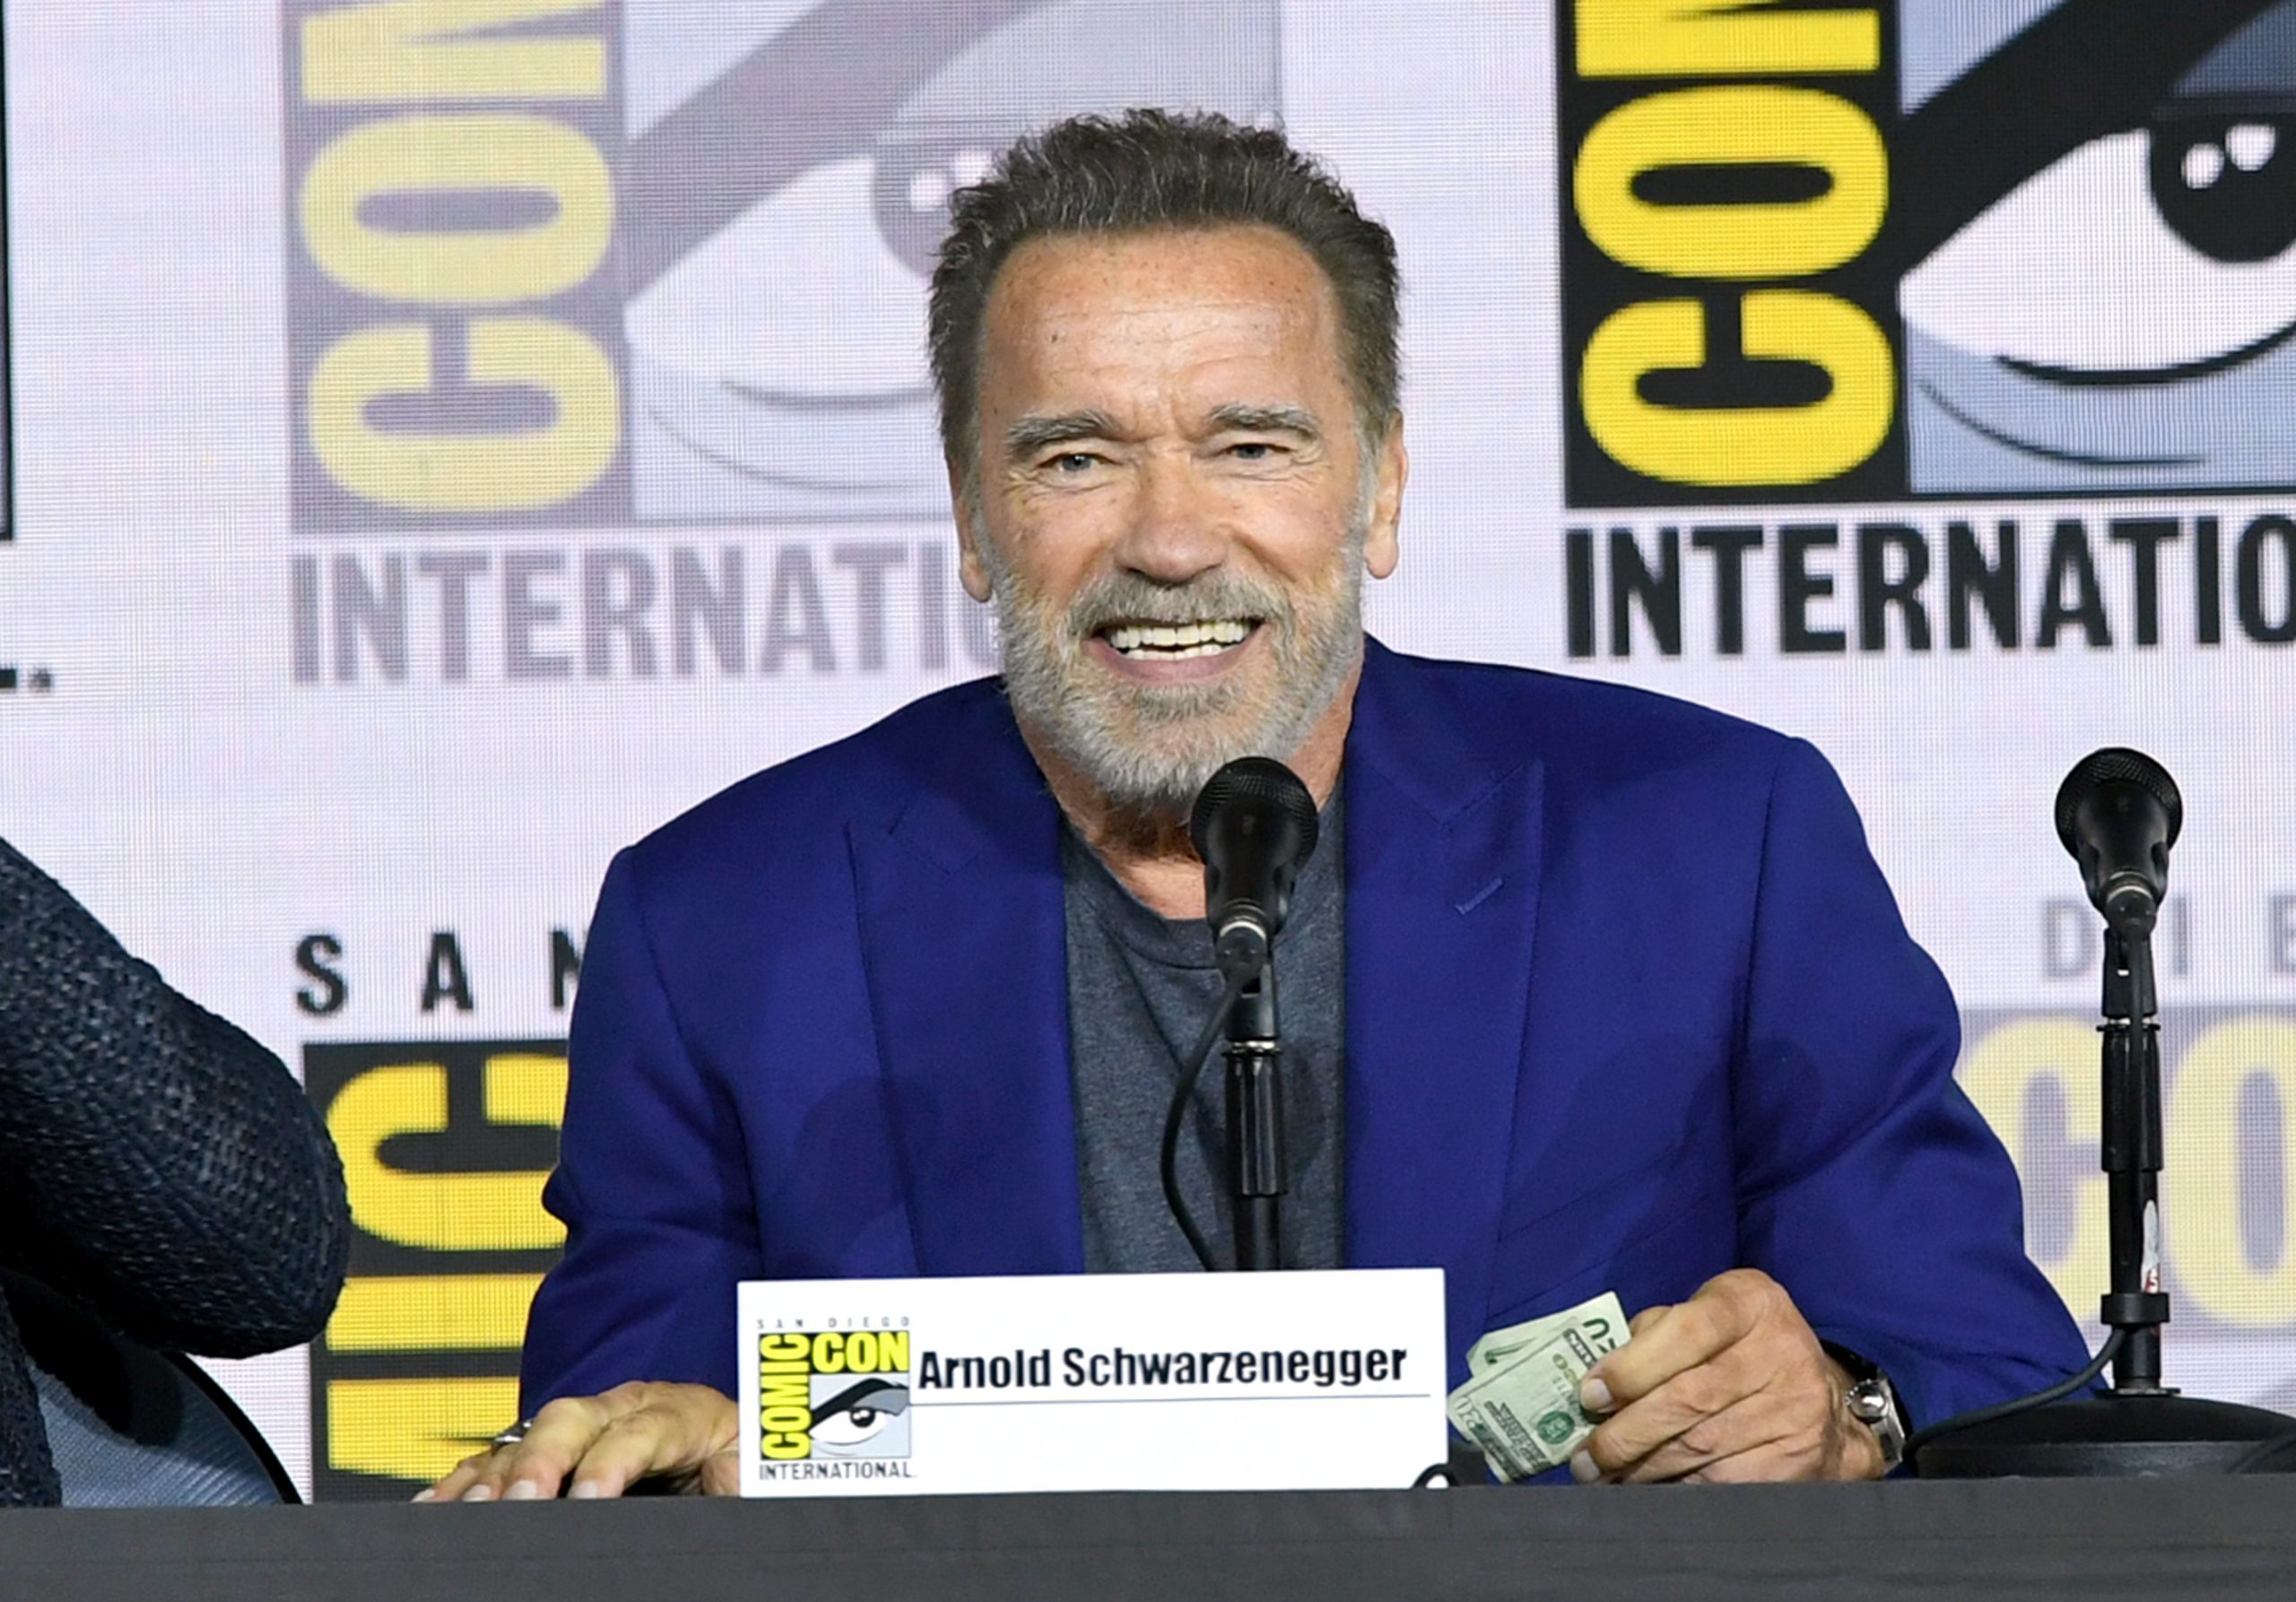 ¡Plop! Arnold Schwarzenegger confunde a su yerno, Chris Pratt con Chris Evans 